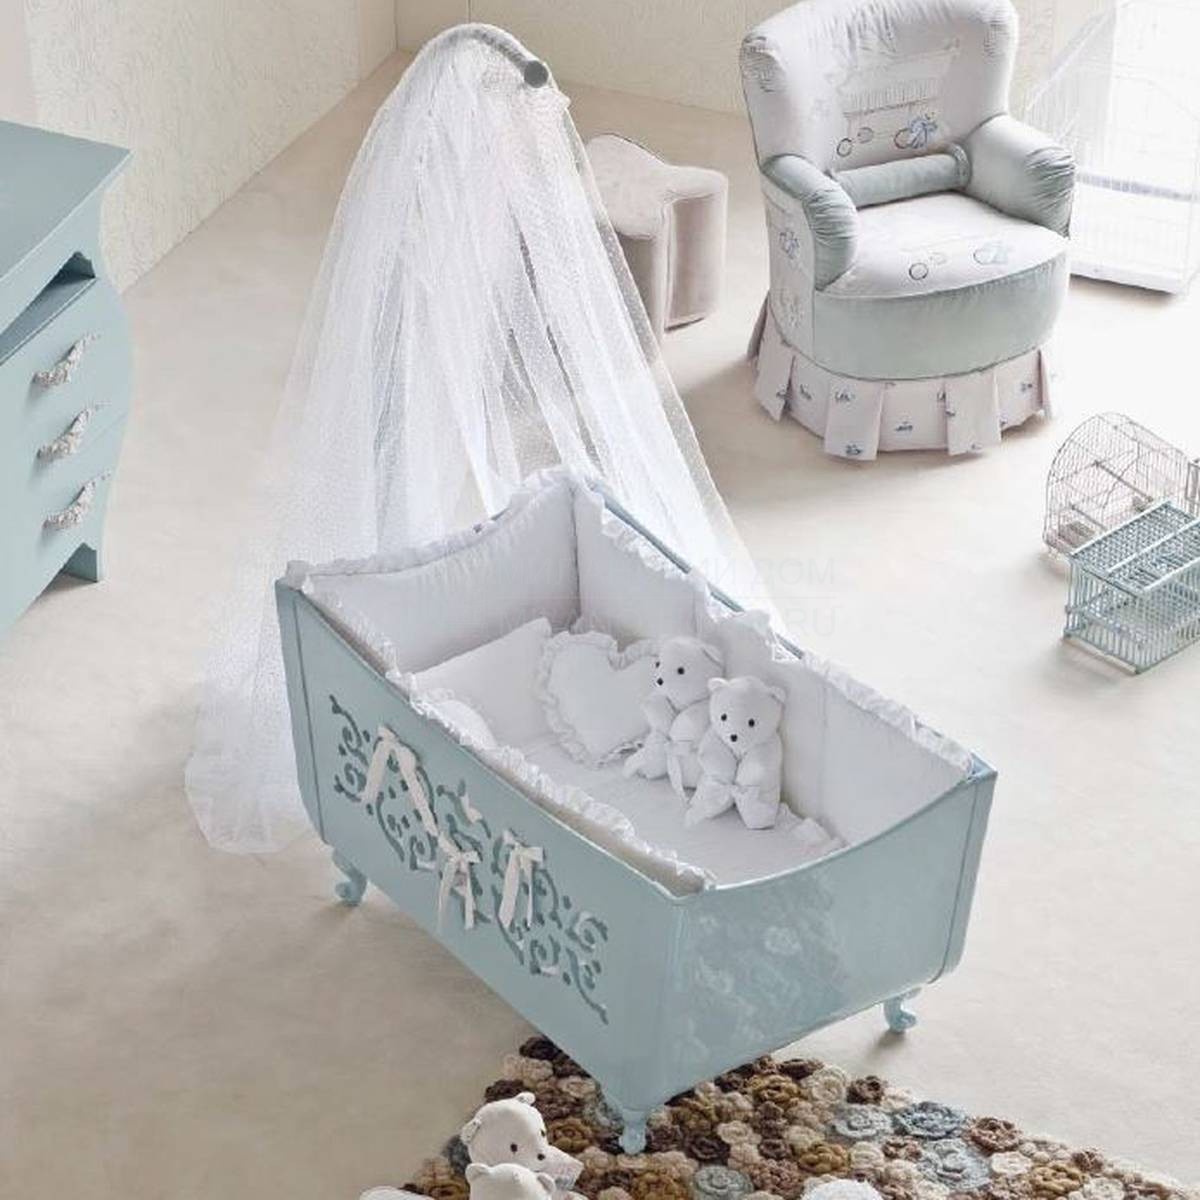 Кроватка для новорожденного Culla Nevil / Art.973/ CUS973S/ CUS973V из Италии фабрики HALLEY